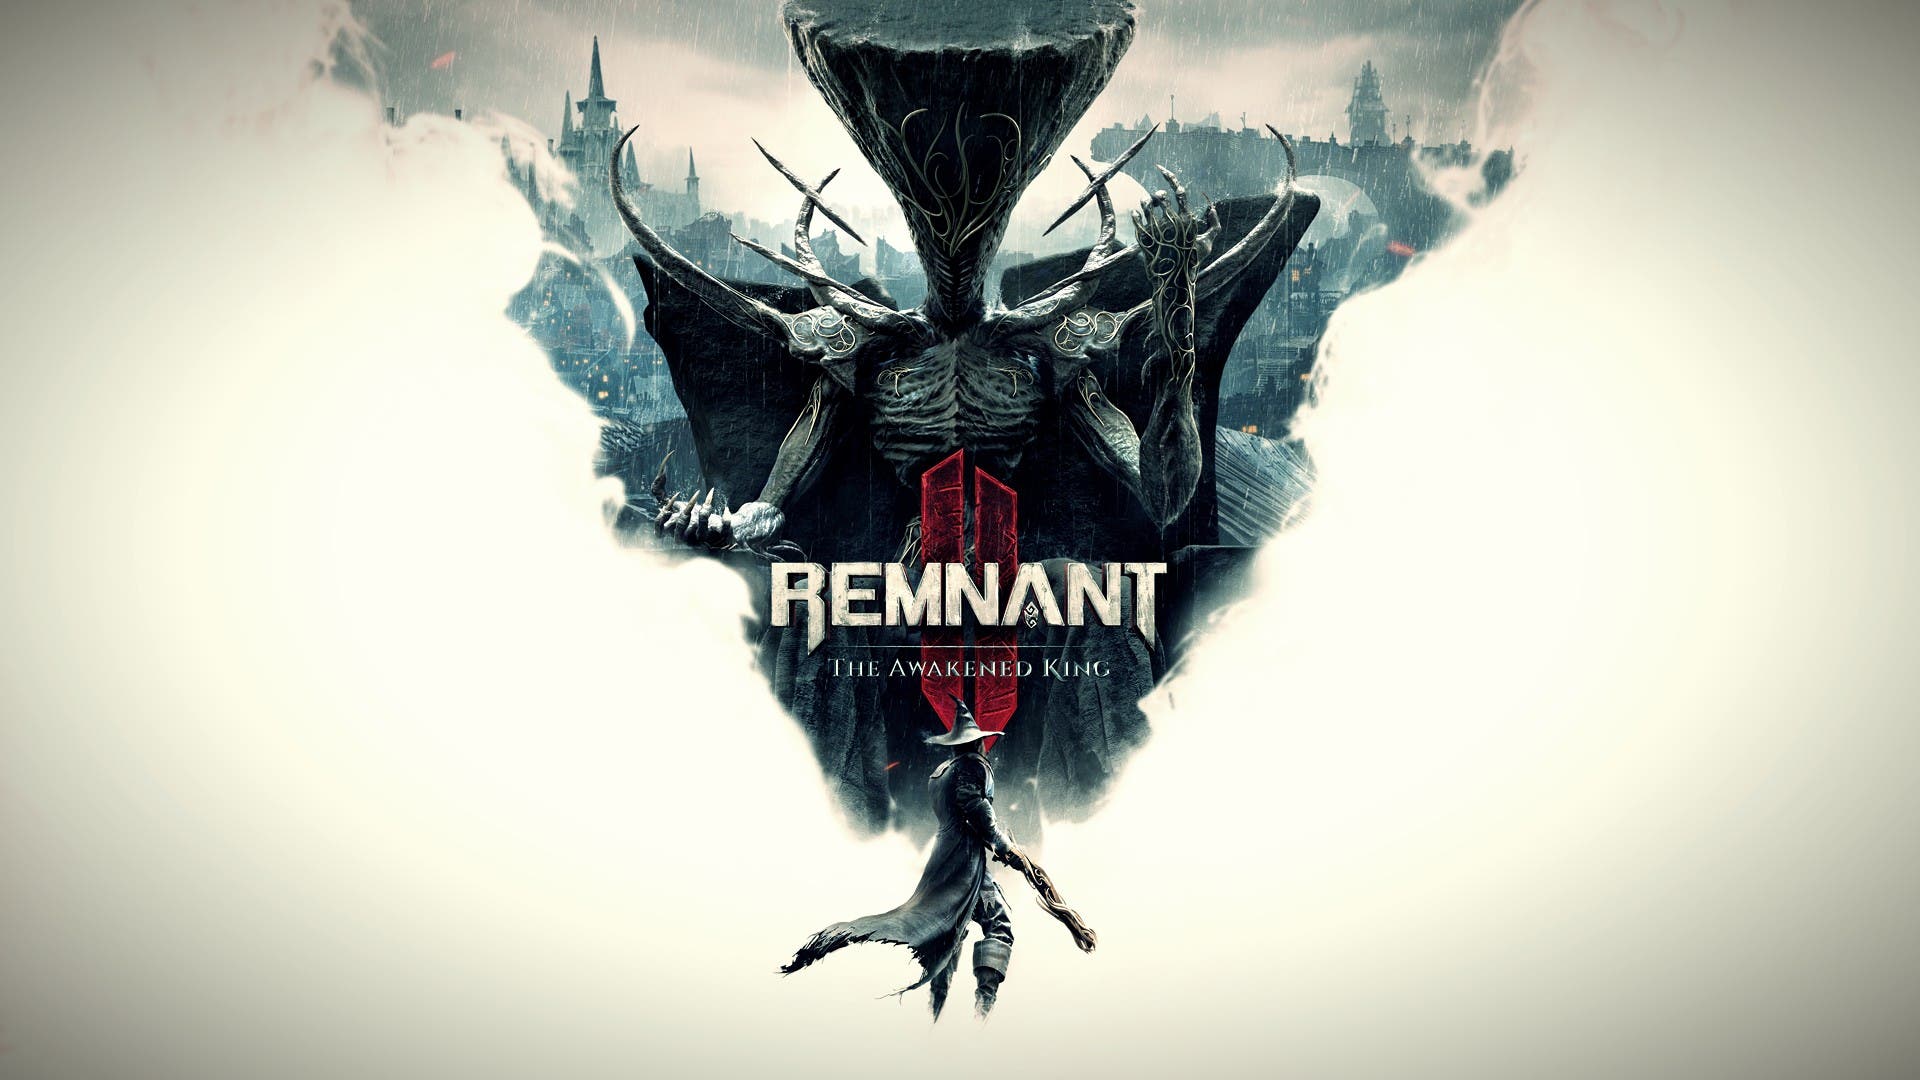 Remnant 2 - The Awakened King DLC Teaser Trailer